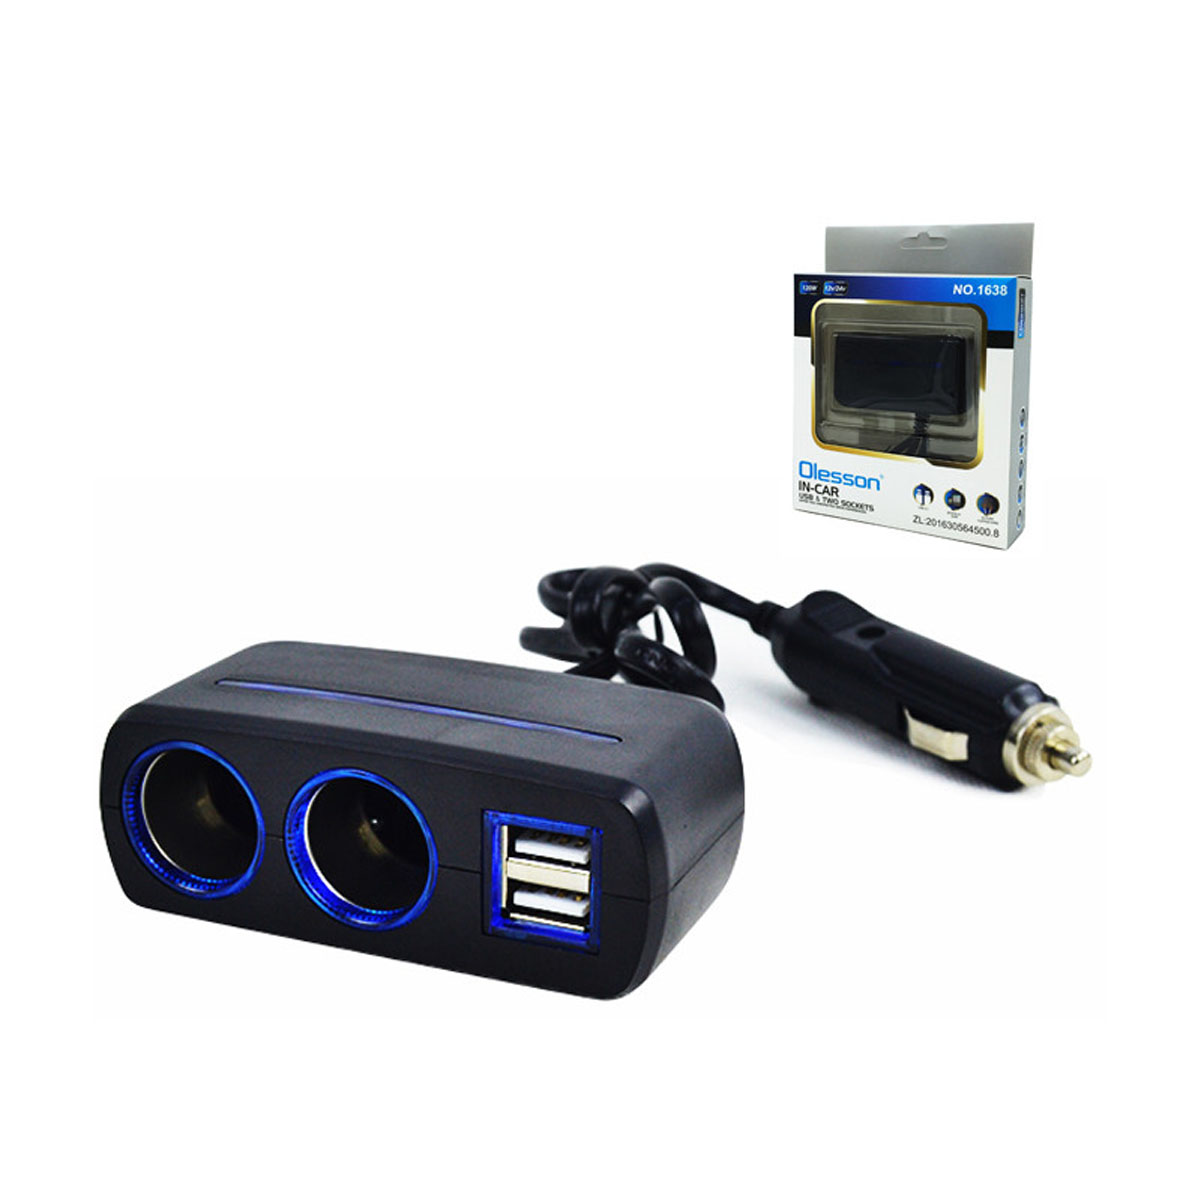 Автомобильный разветвитель OLESSON 1638, 120W, 12/24V, 2 выхода прикуривателя, 2 USB, цвет черный